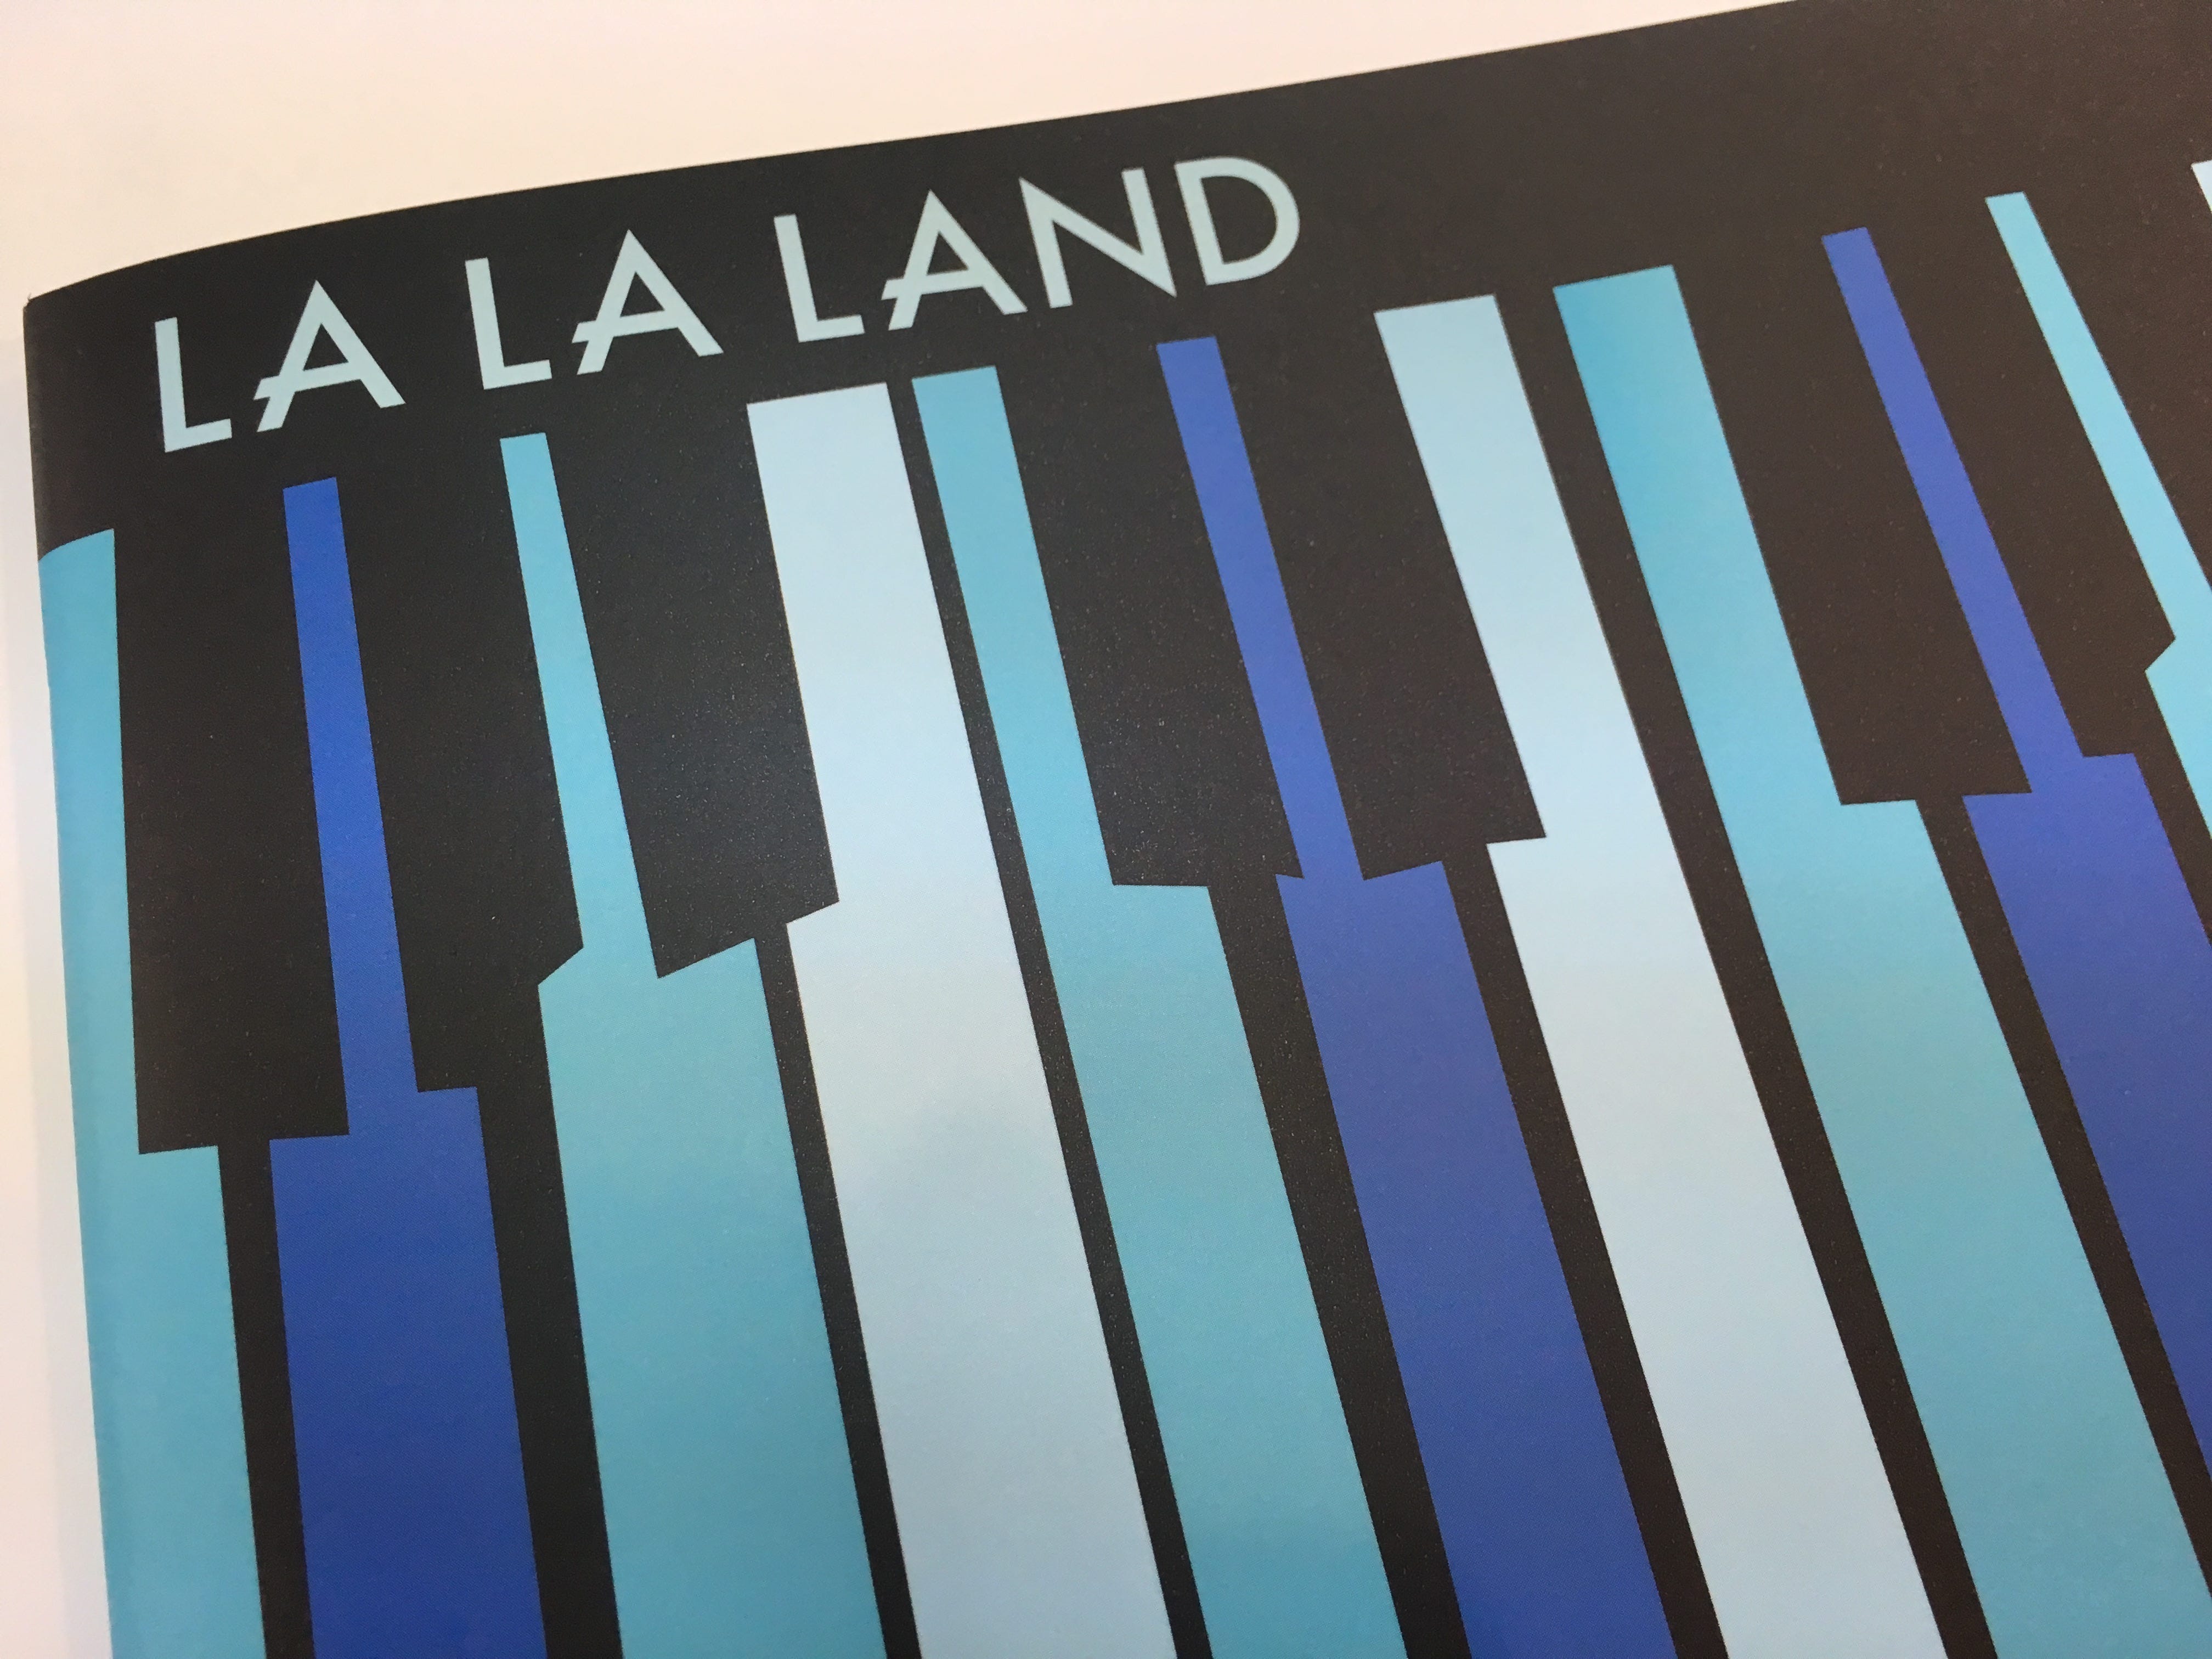 映画 La La Landを見てきた 人生賛歌 By Takkii エンタメ Medium